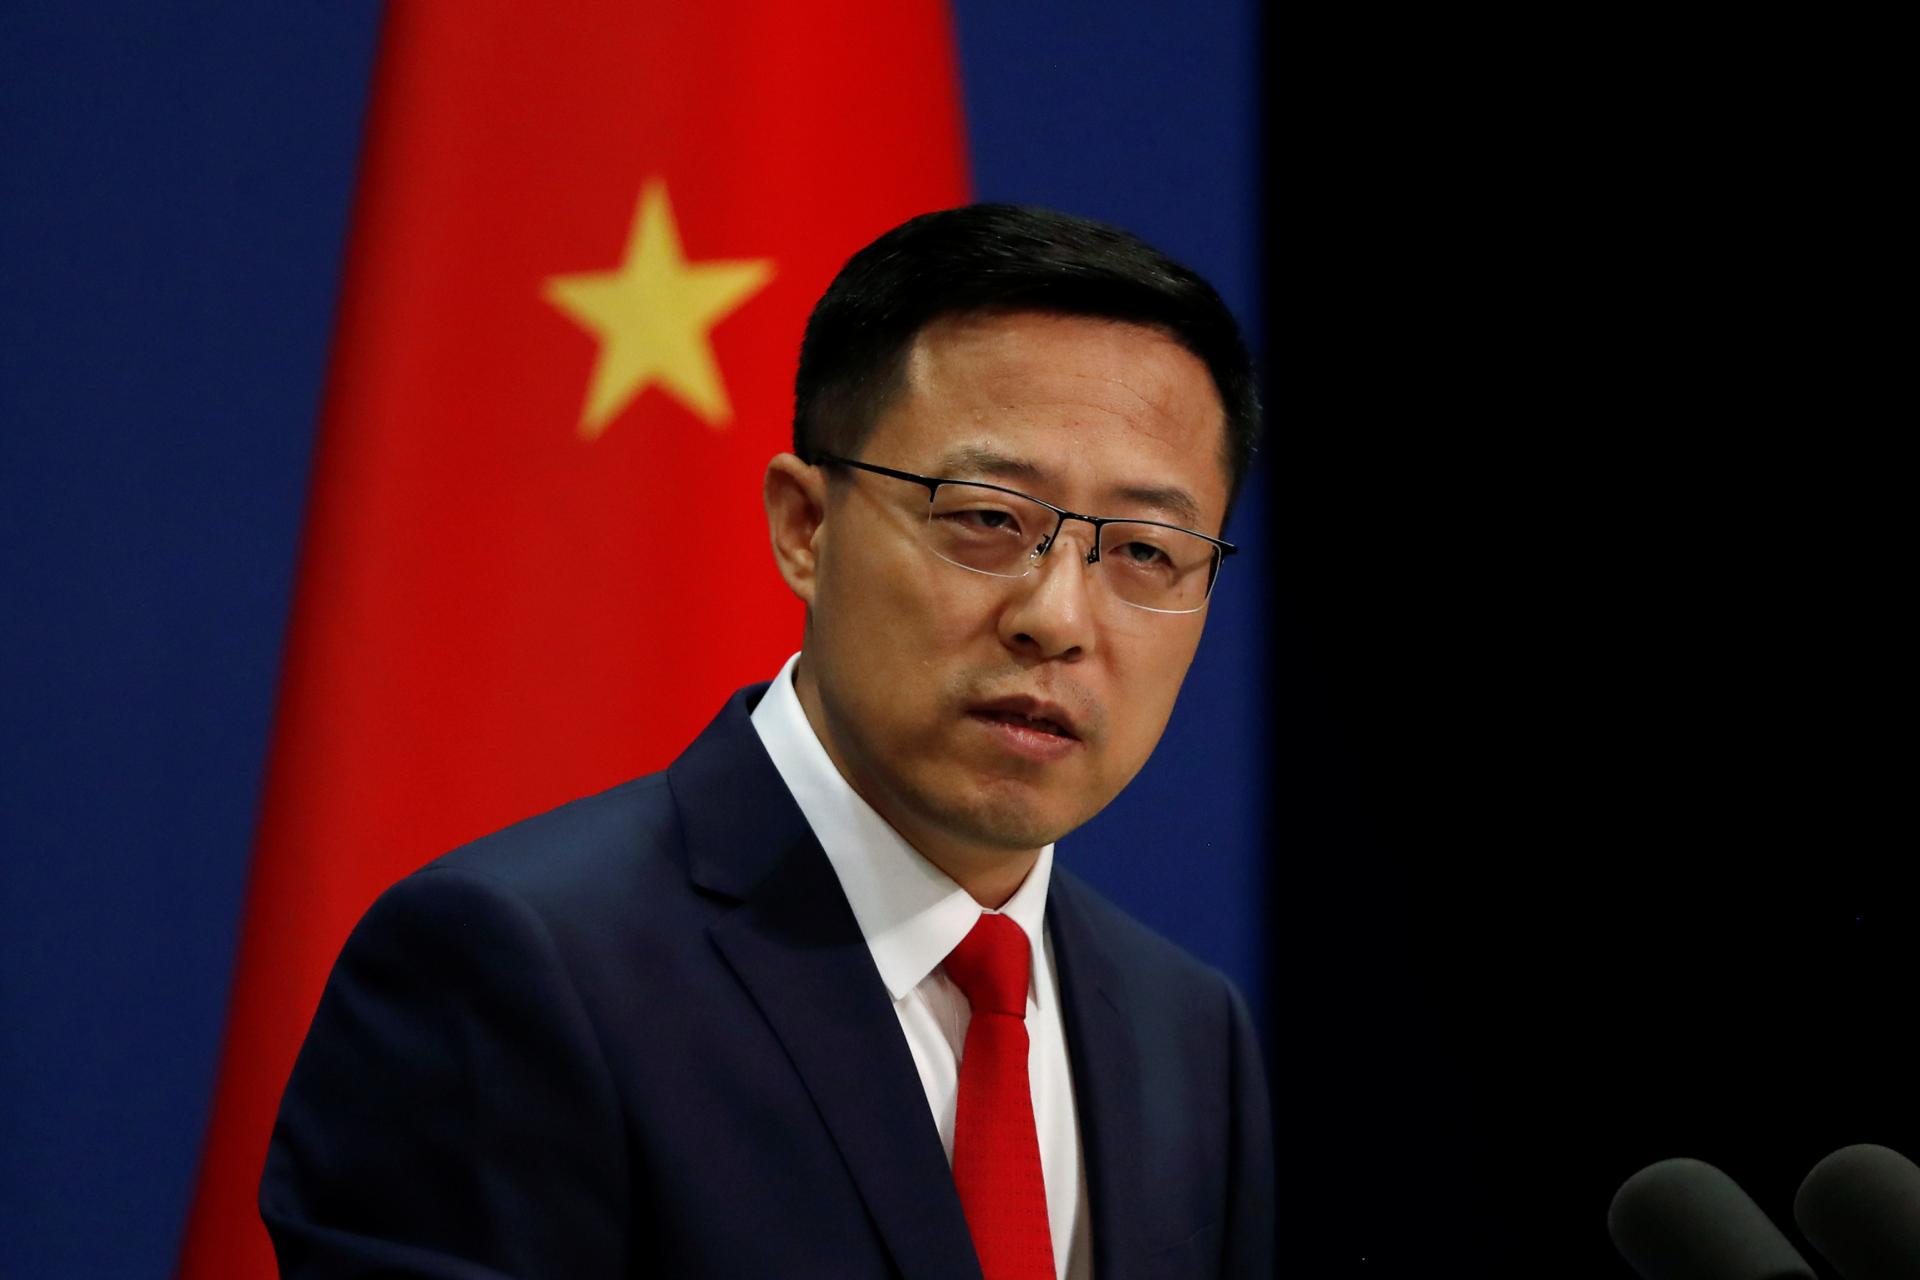 Չինաստան․ Ֆինլանդիյի ՆԱՏՕ-ին անդամակցությունը նոր գործոններ կավելացնի իրենց հարաբերություններին